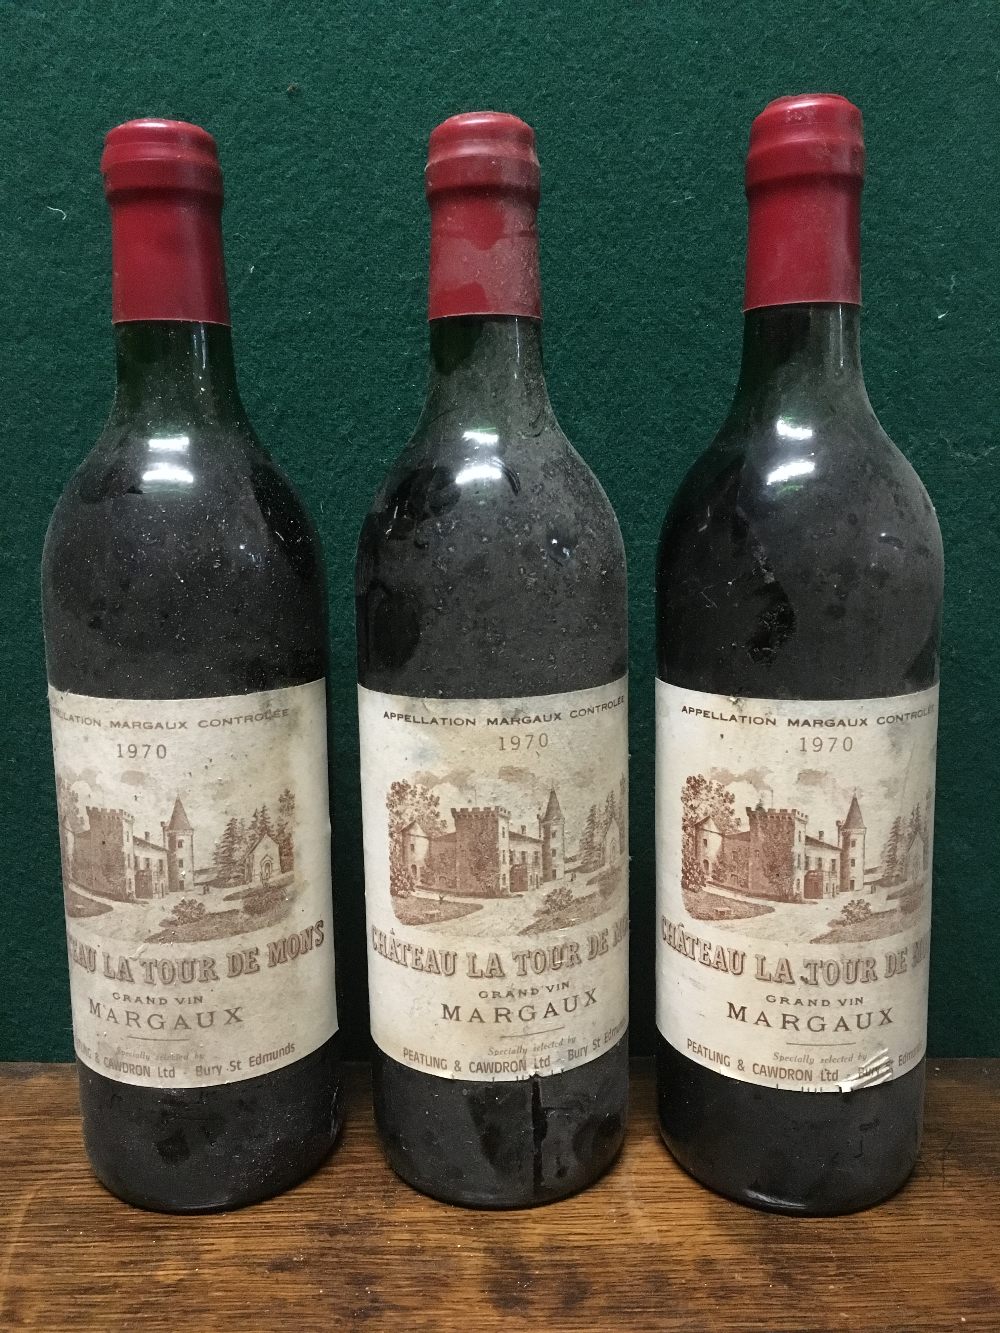 Chateau La Tour de Mons Grand Vin Margaux 1970 Three bottles.